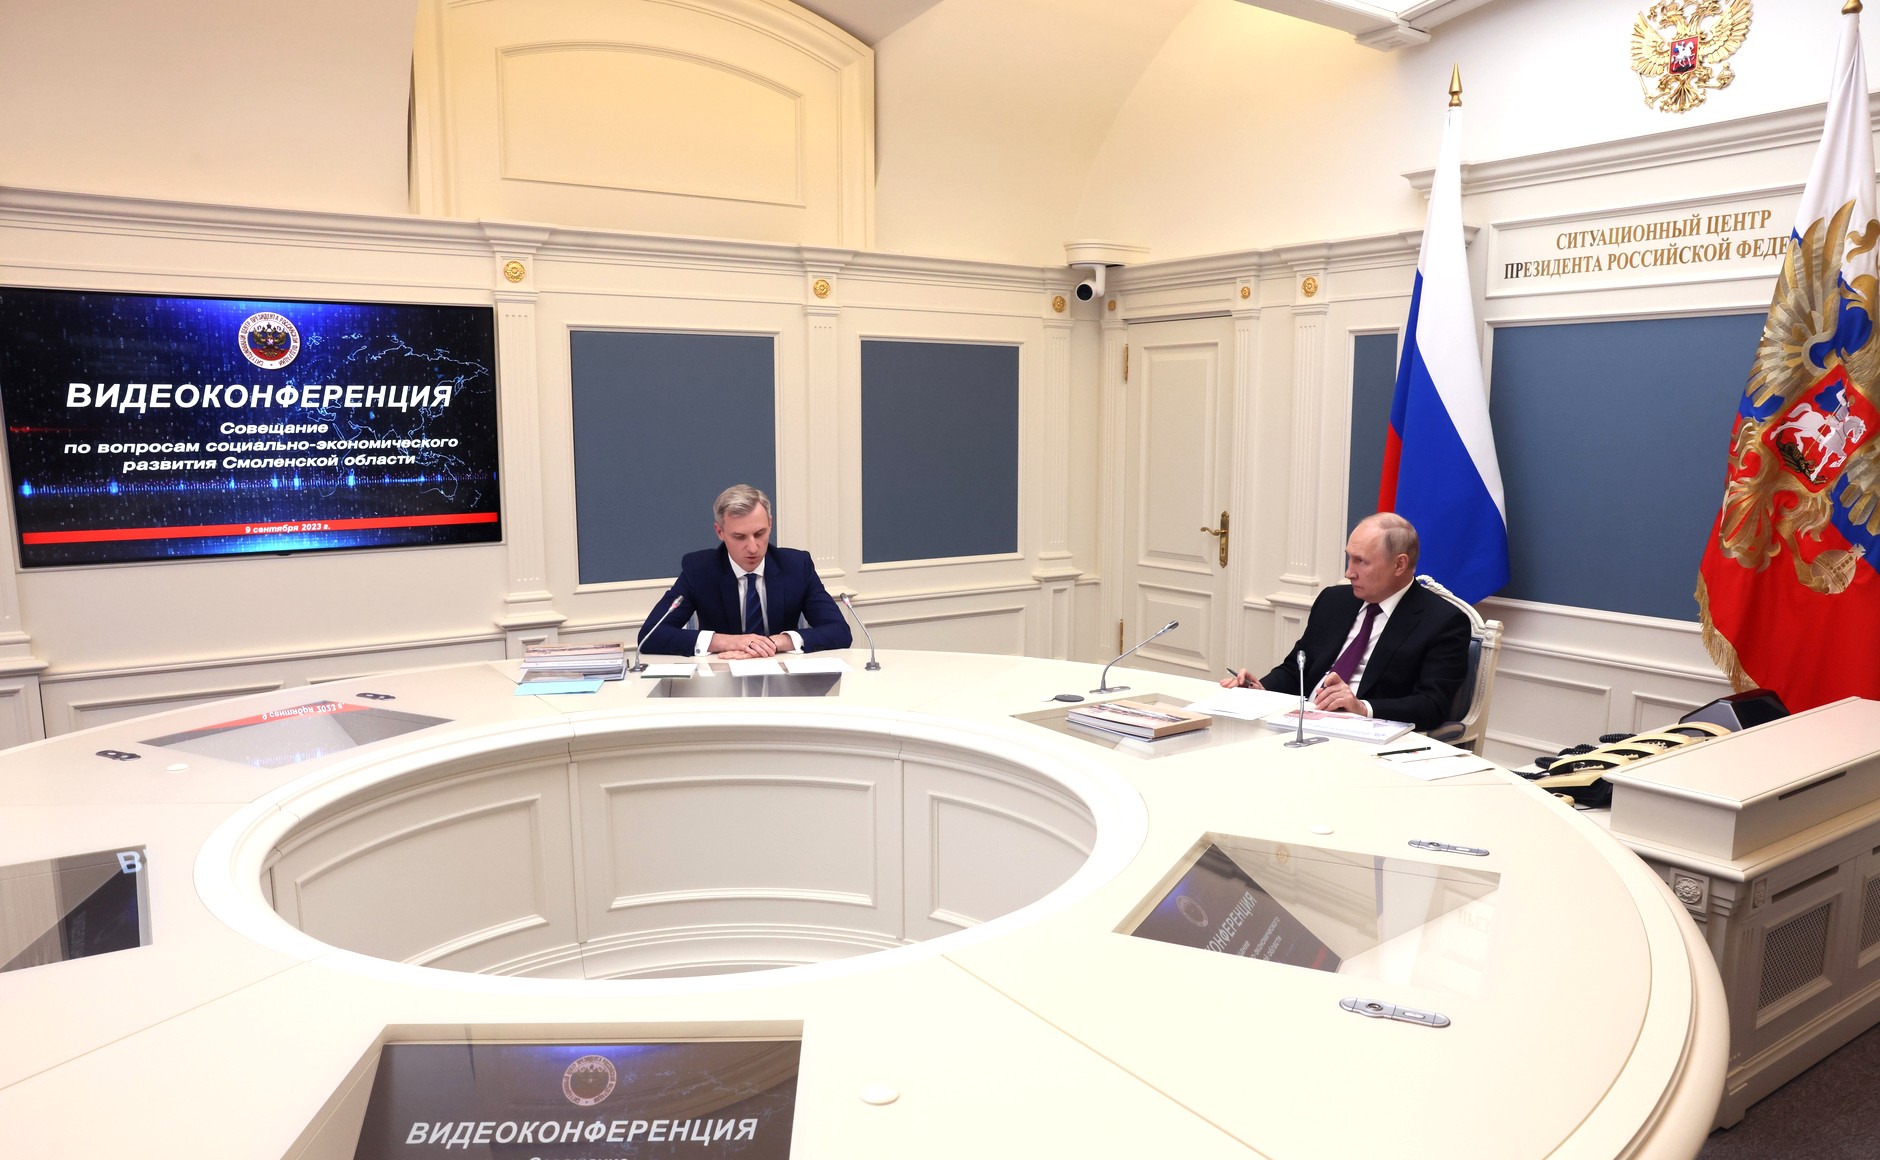 Владимир Путин обозначил основные задачи в развитии Смоленской области 